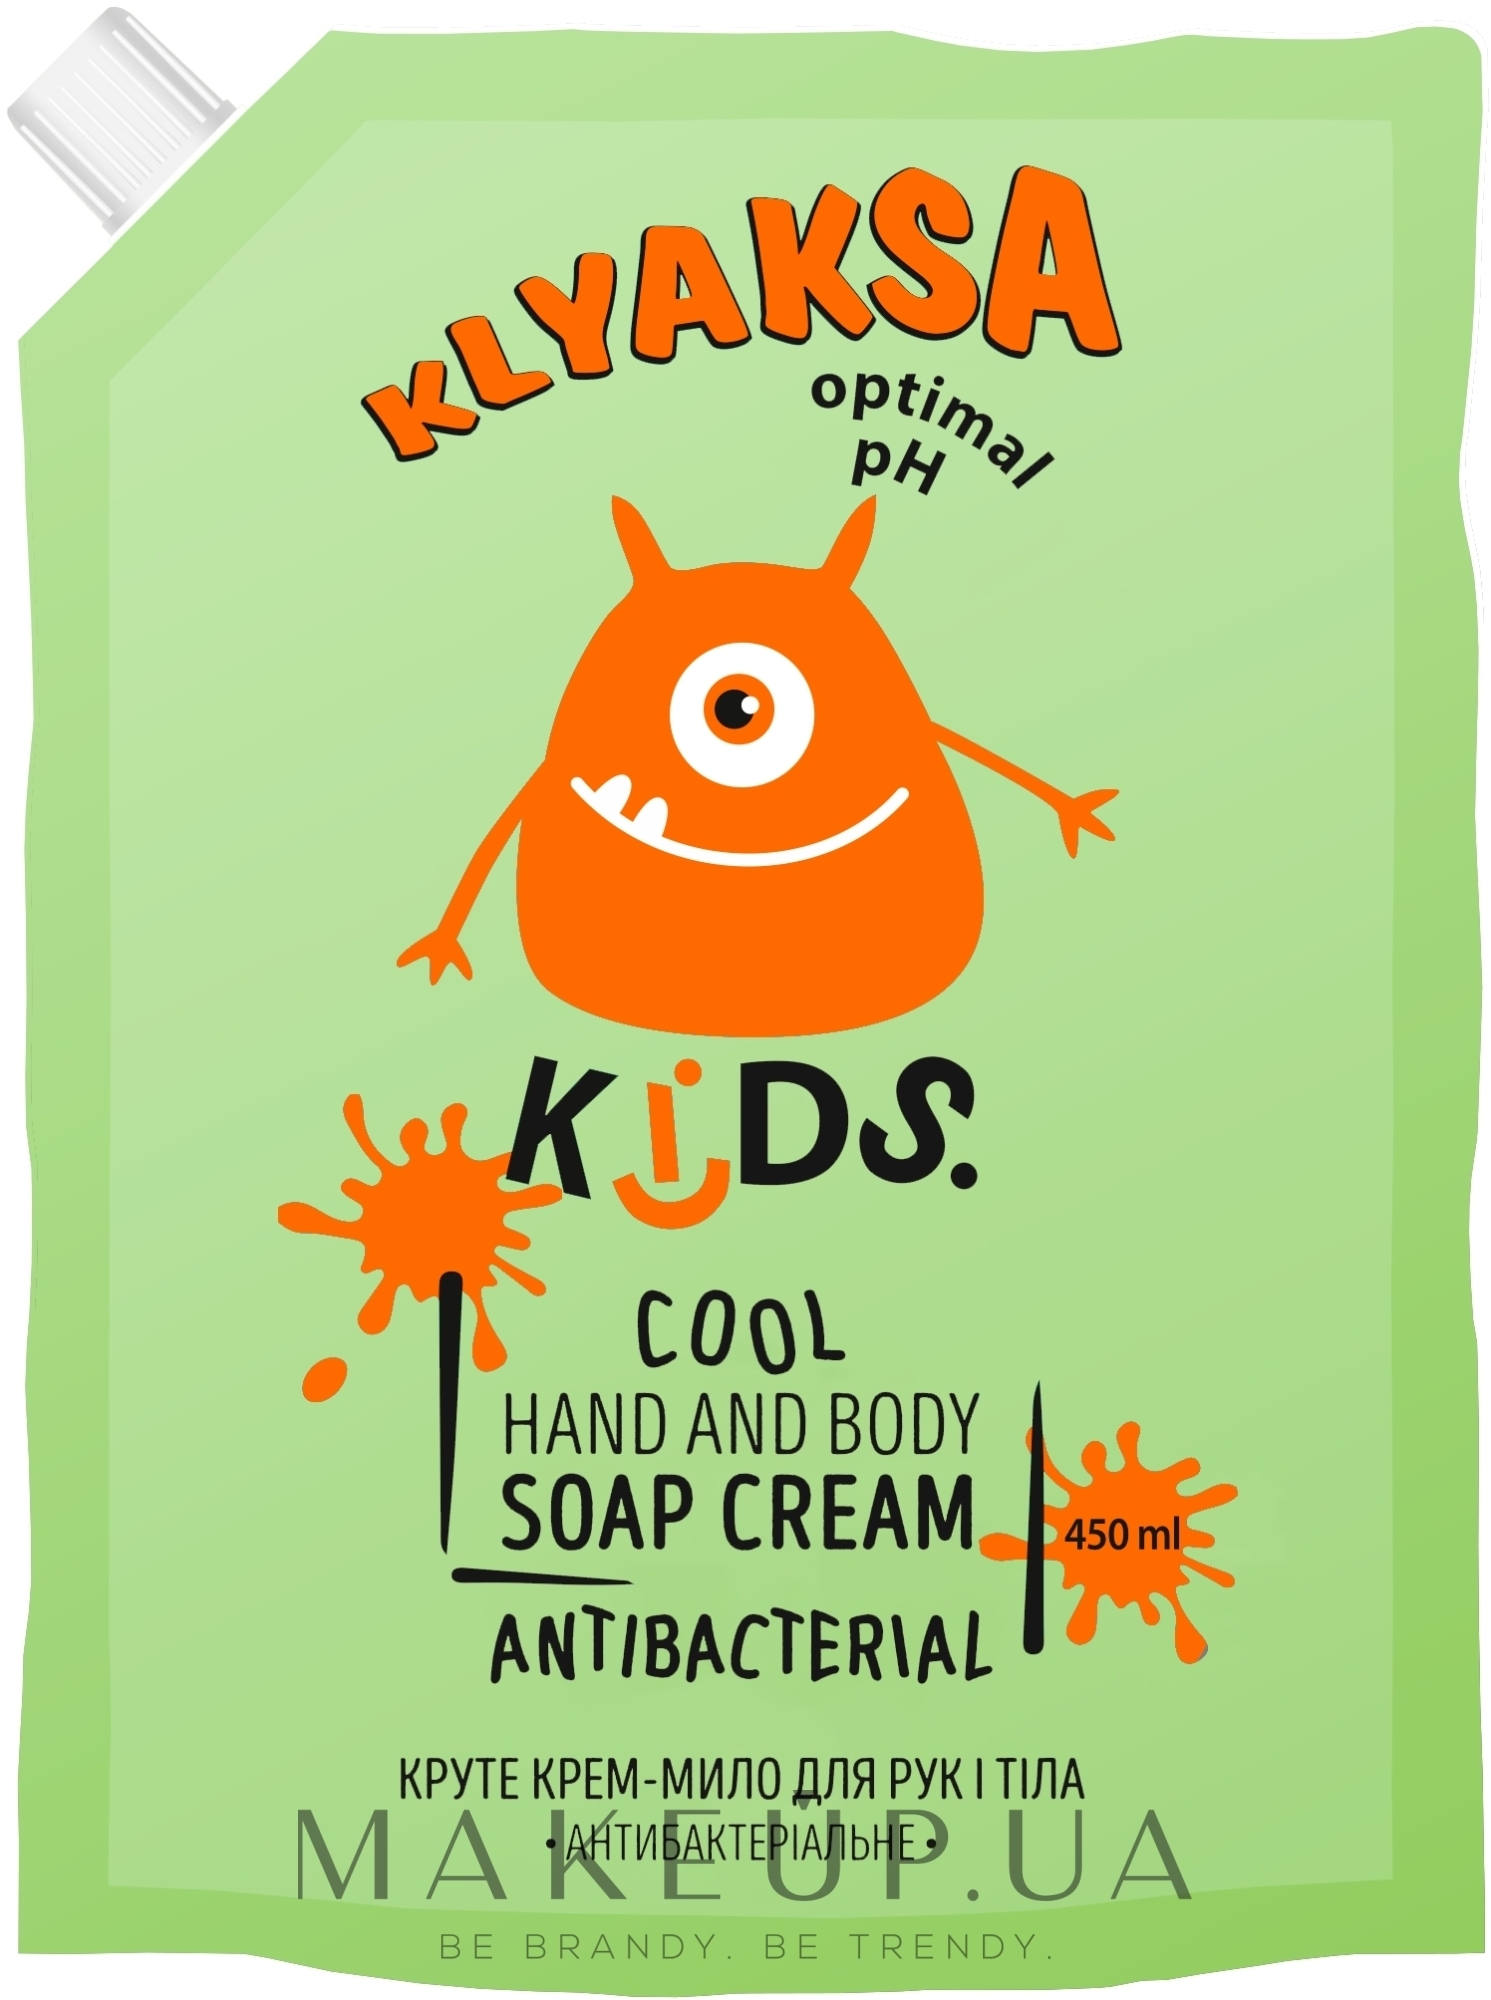 Крутое крем-мыло для рук и тела "Антибактериальное" (дойпак) - Klyaksa — фото 450ml